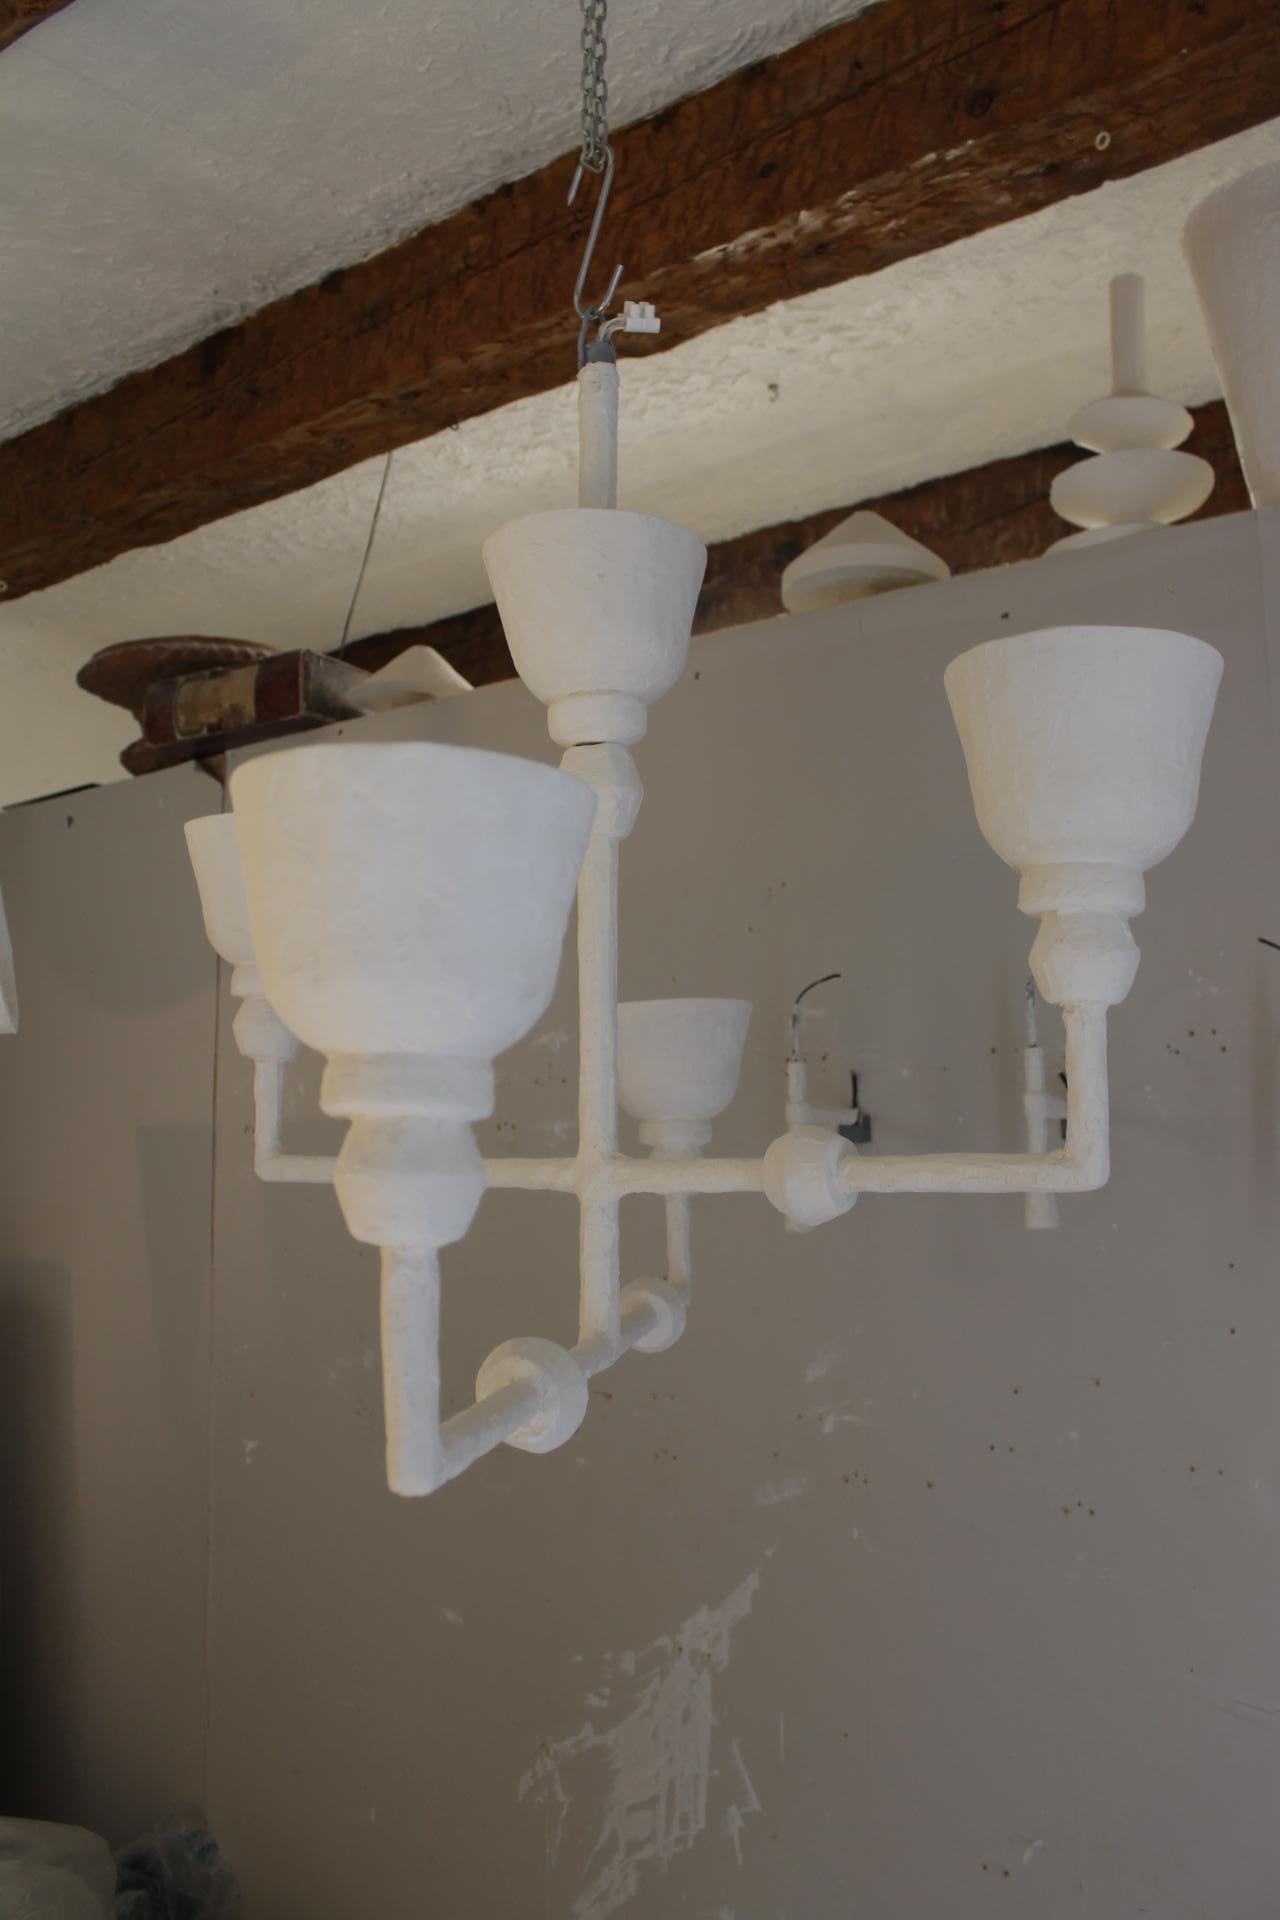 Lampe en plâtre dans le style de Giacometti
Composé de quatre Branch.
Le luminaire est électrifié en état de marche.
Base E 27